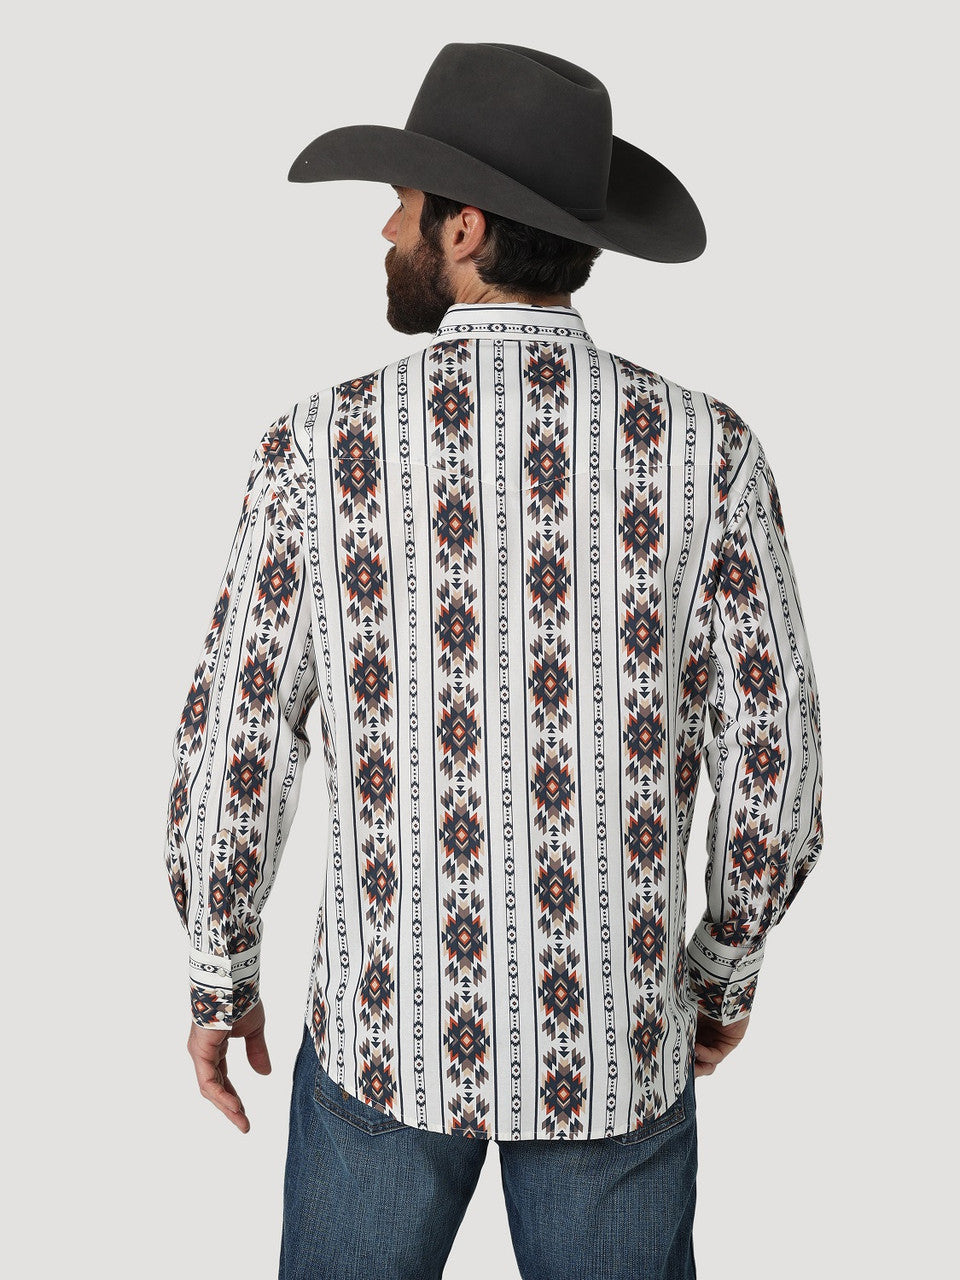 Wrangler Checotah White Aztec Snap Men's Western Shirt